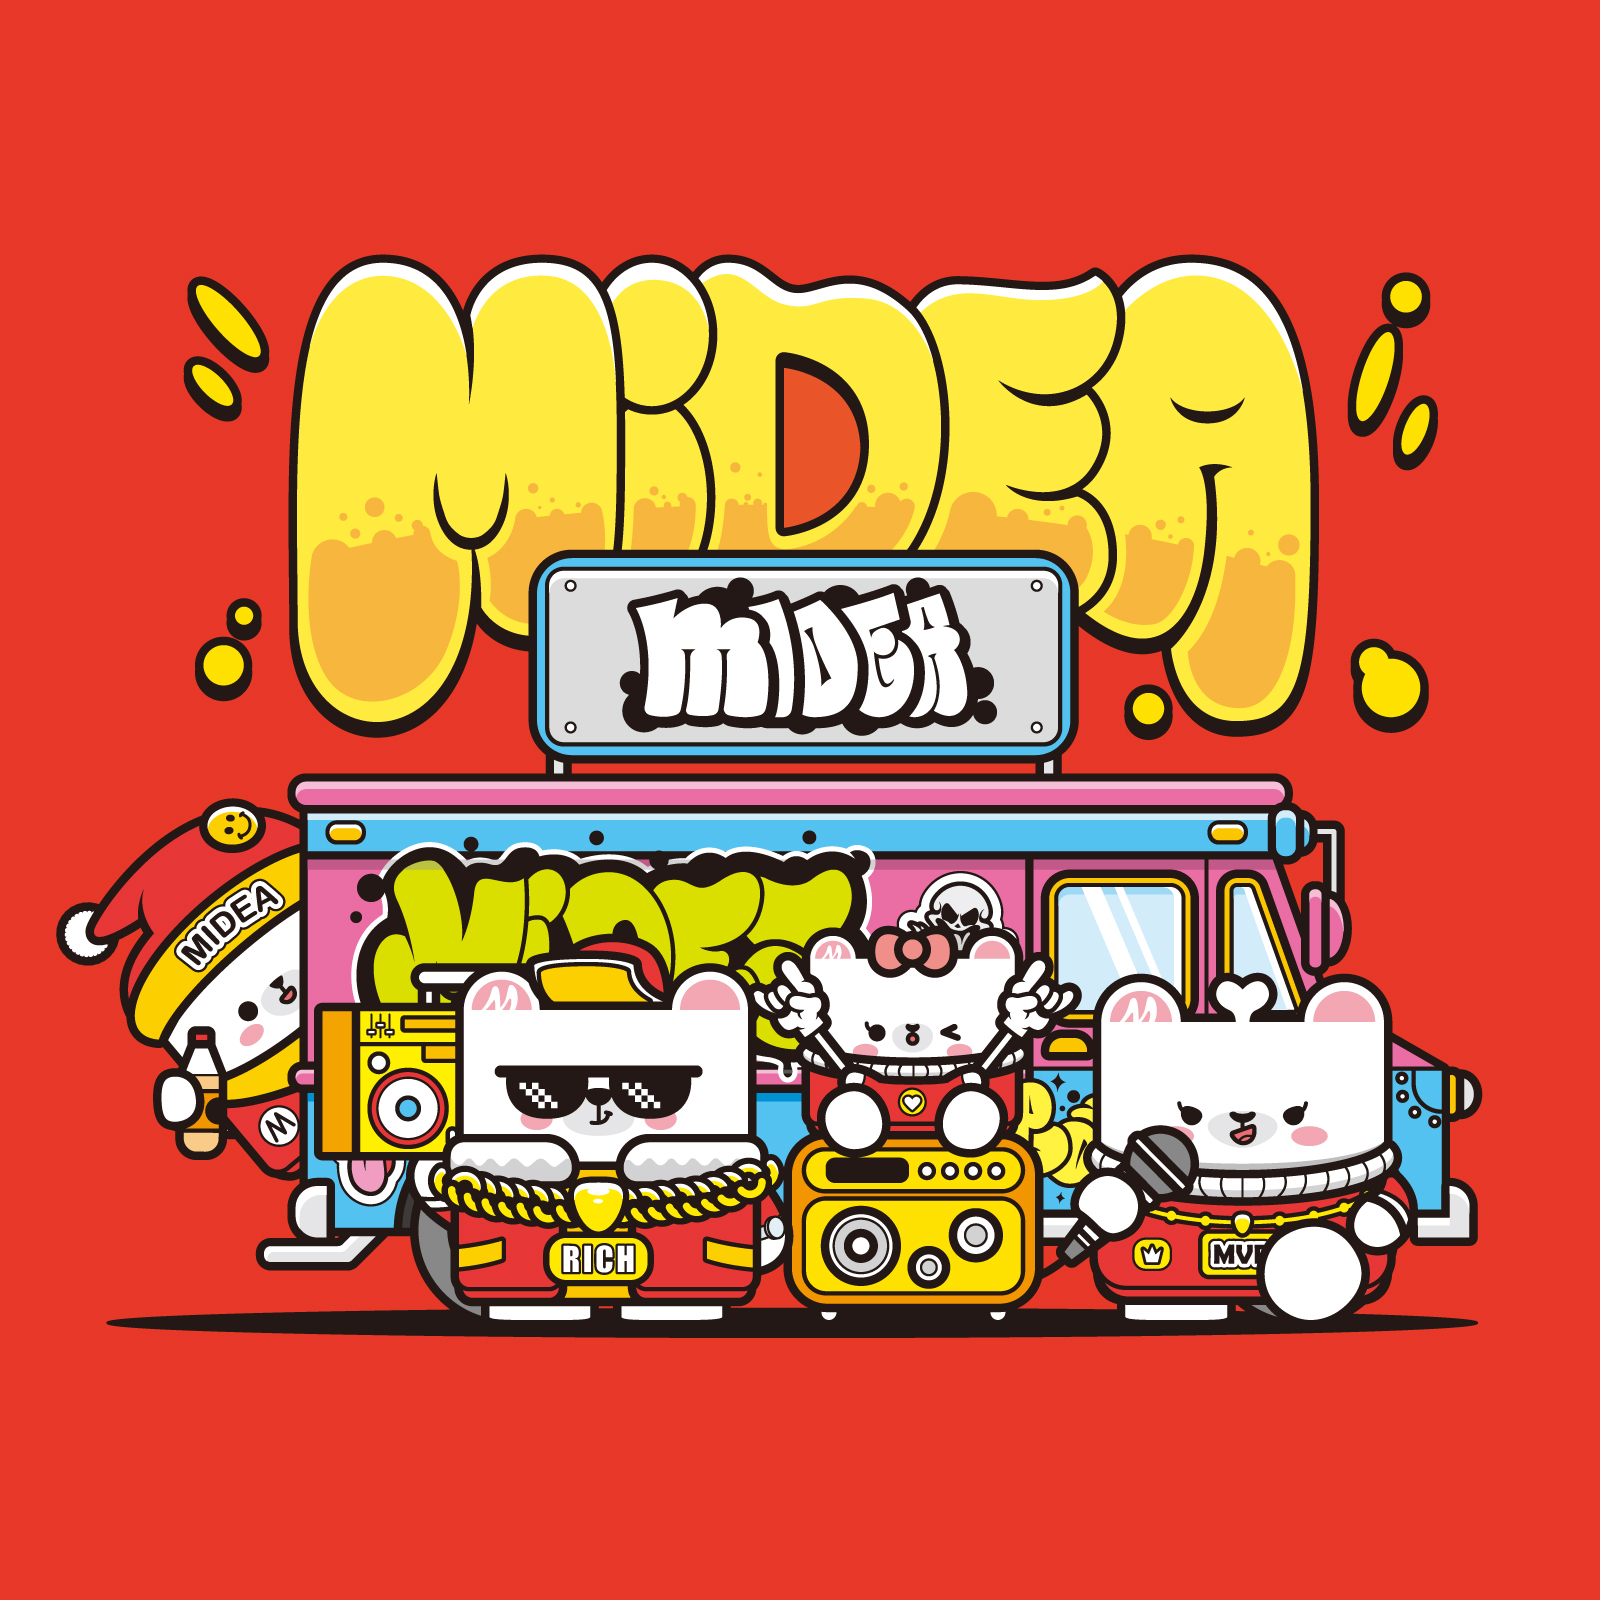 美的品牌 Midea Family Q版IP形象 插画设计插画图片壁纸